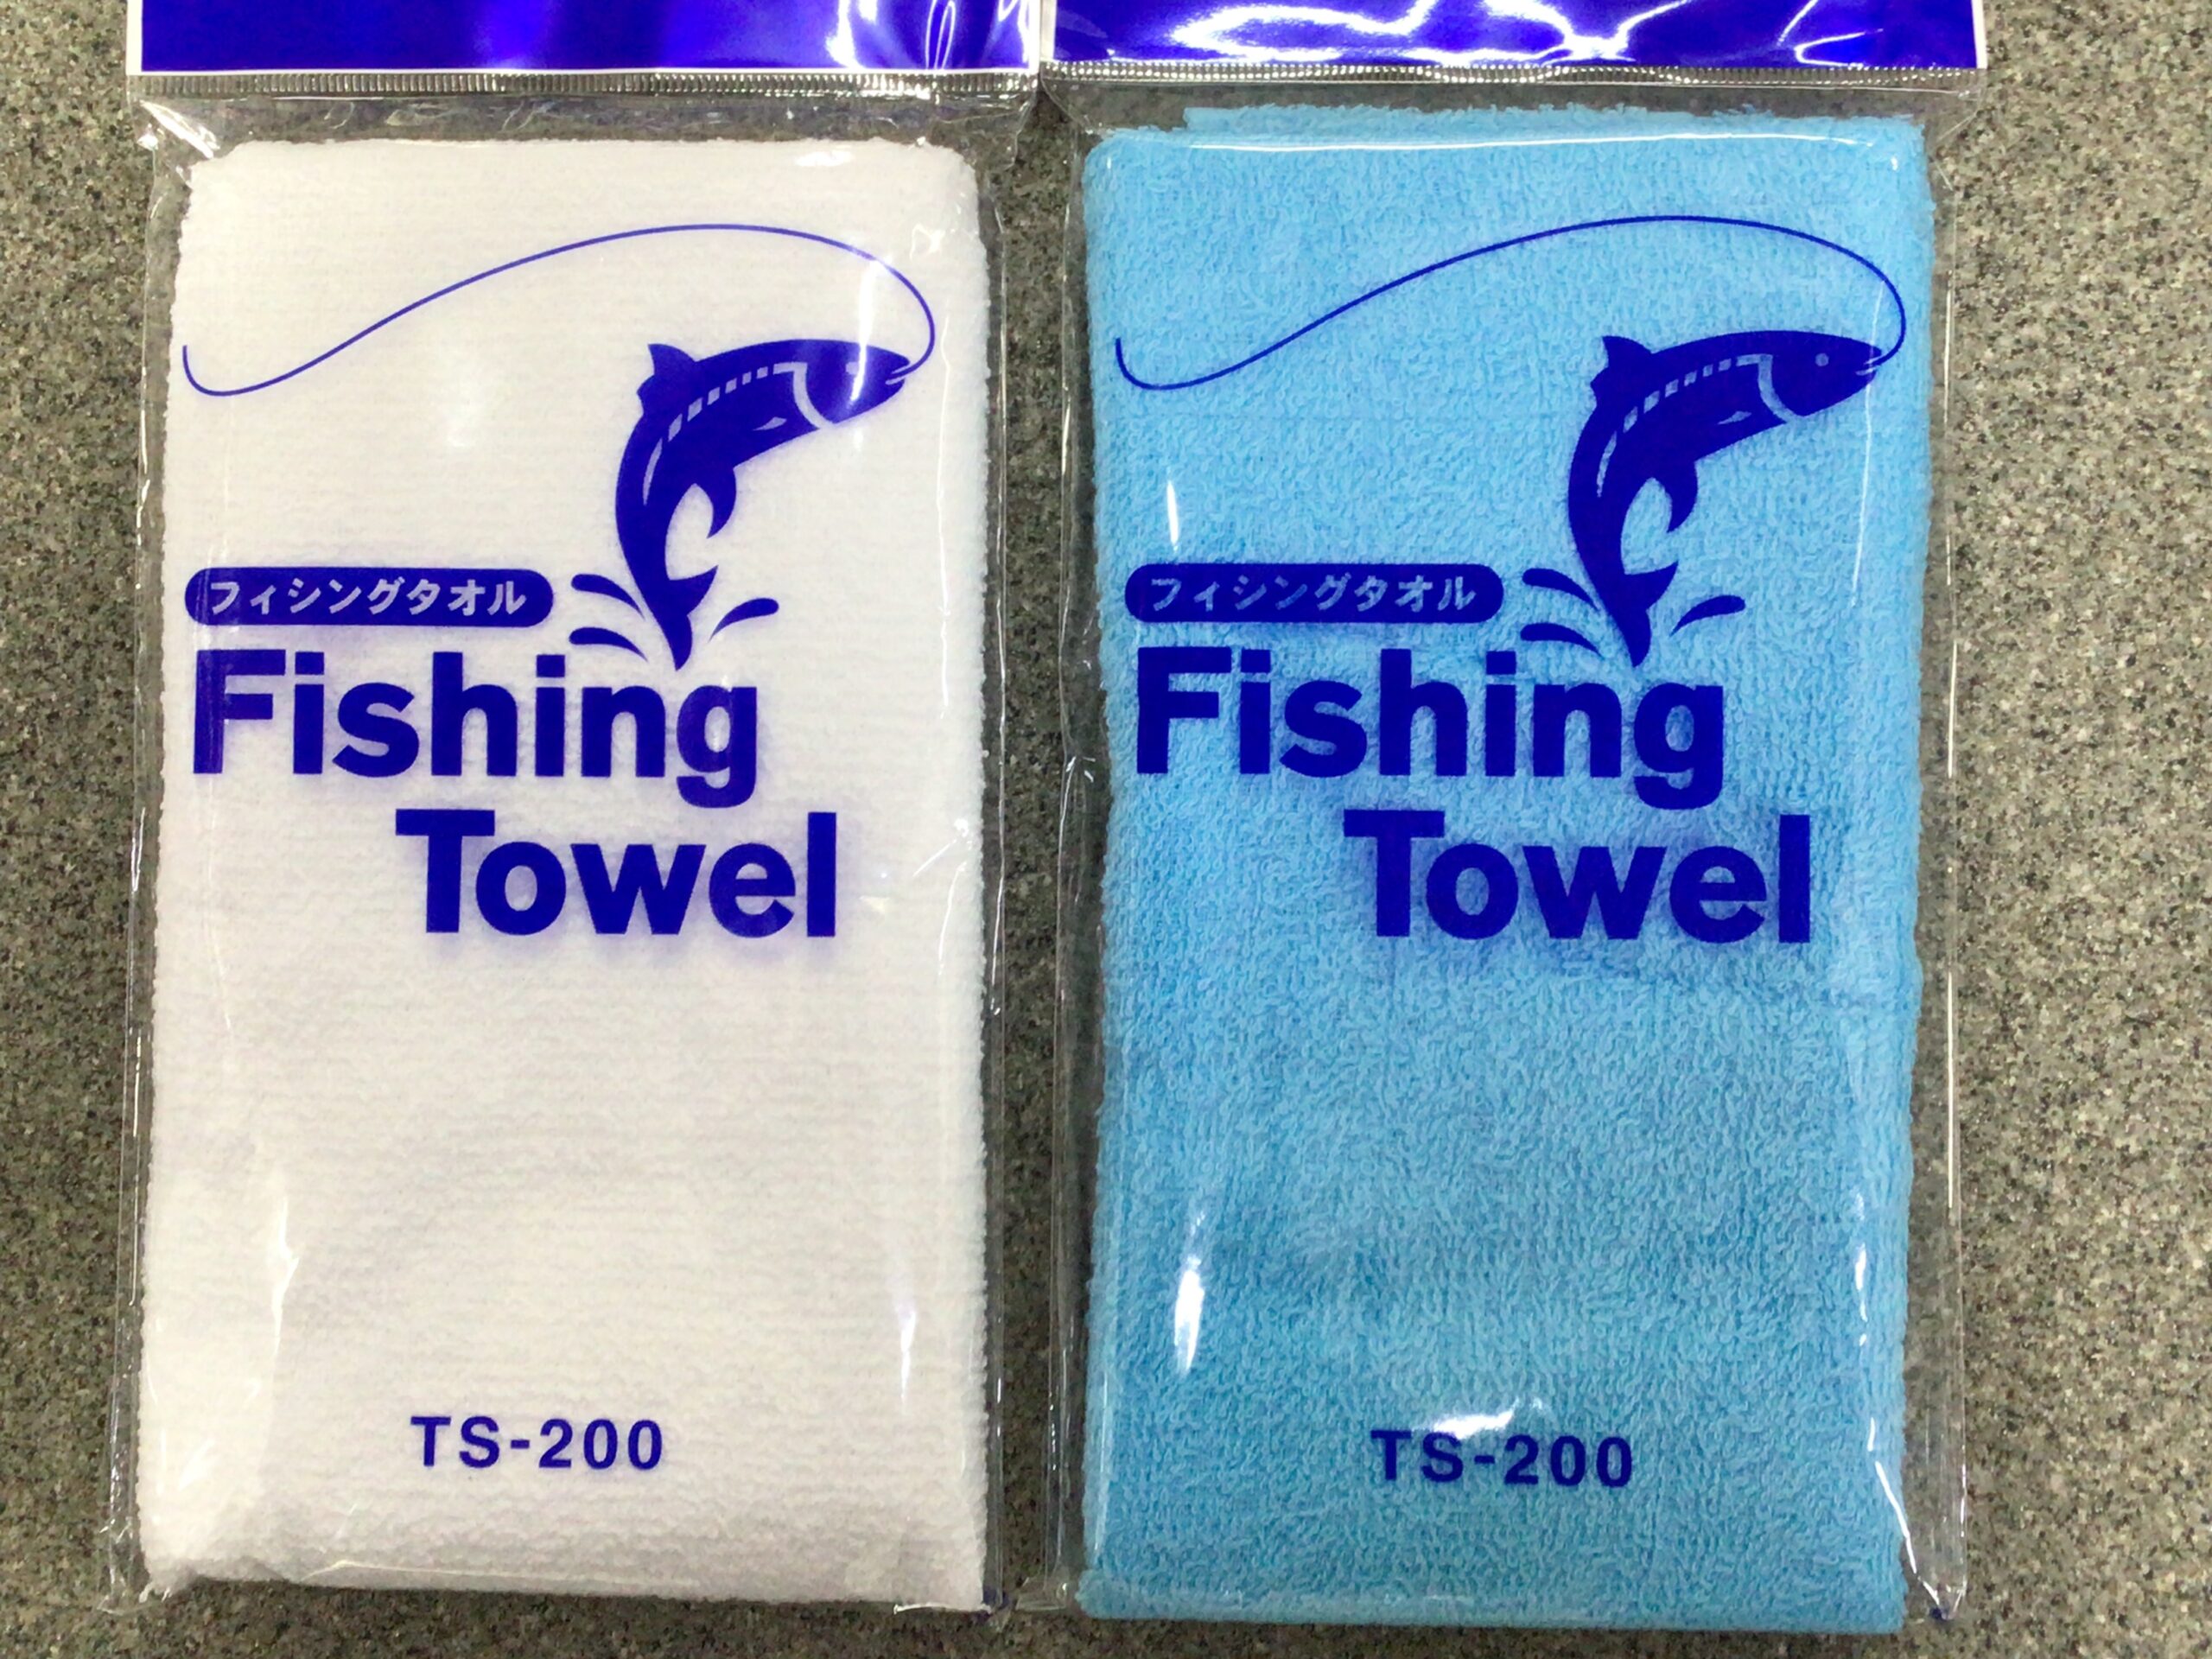 魚なエサを触った時に手を洗いタオルで拭く。釣行時はこれの繰り返し。釣太郎